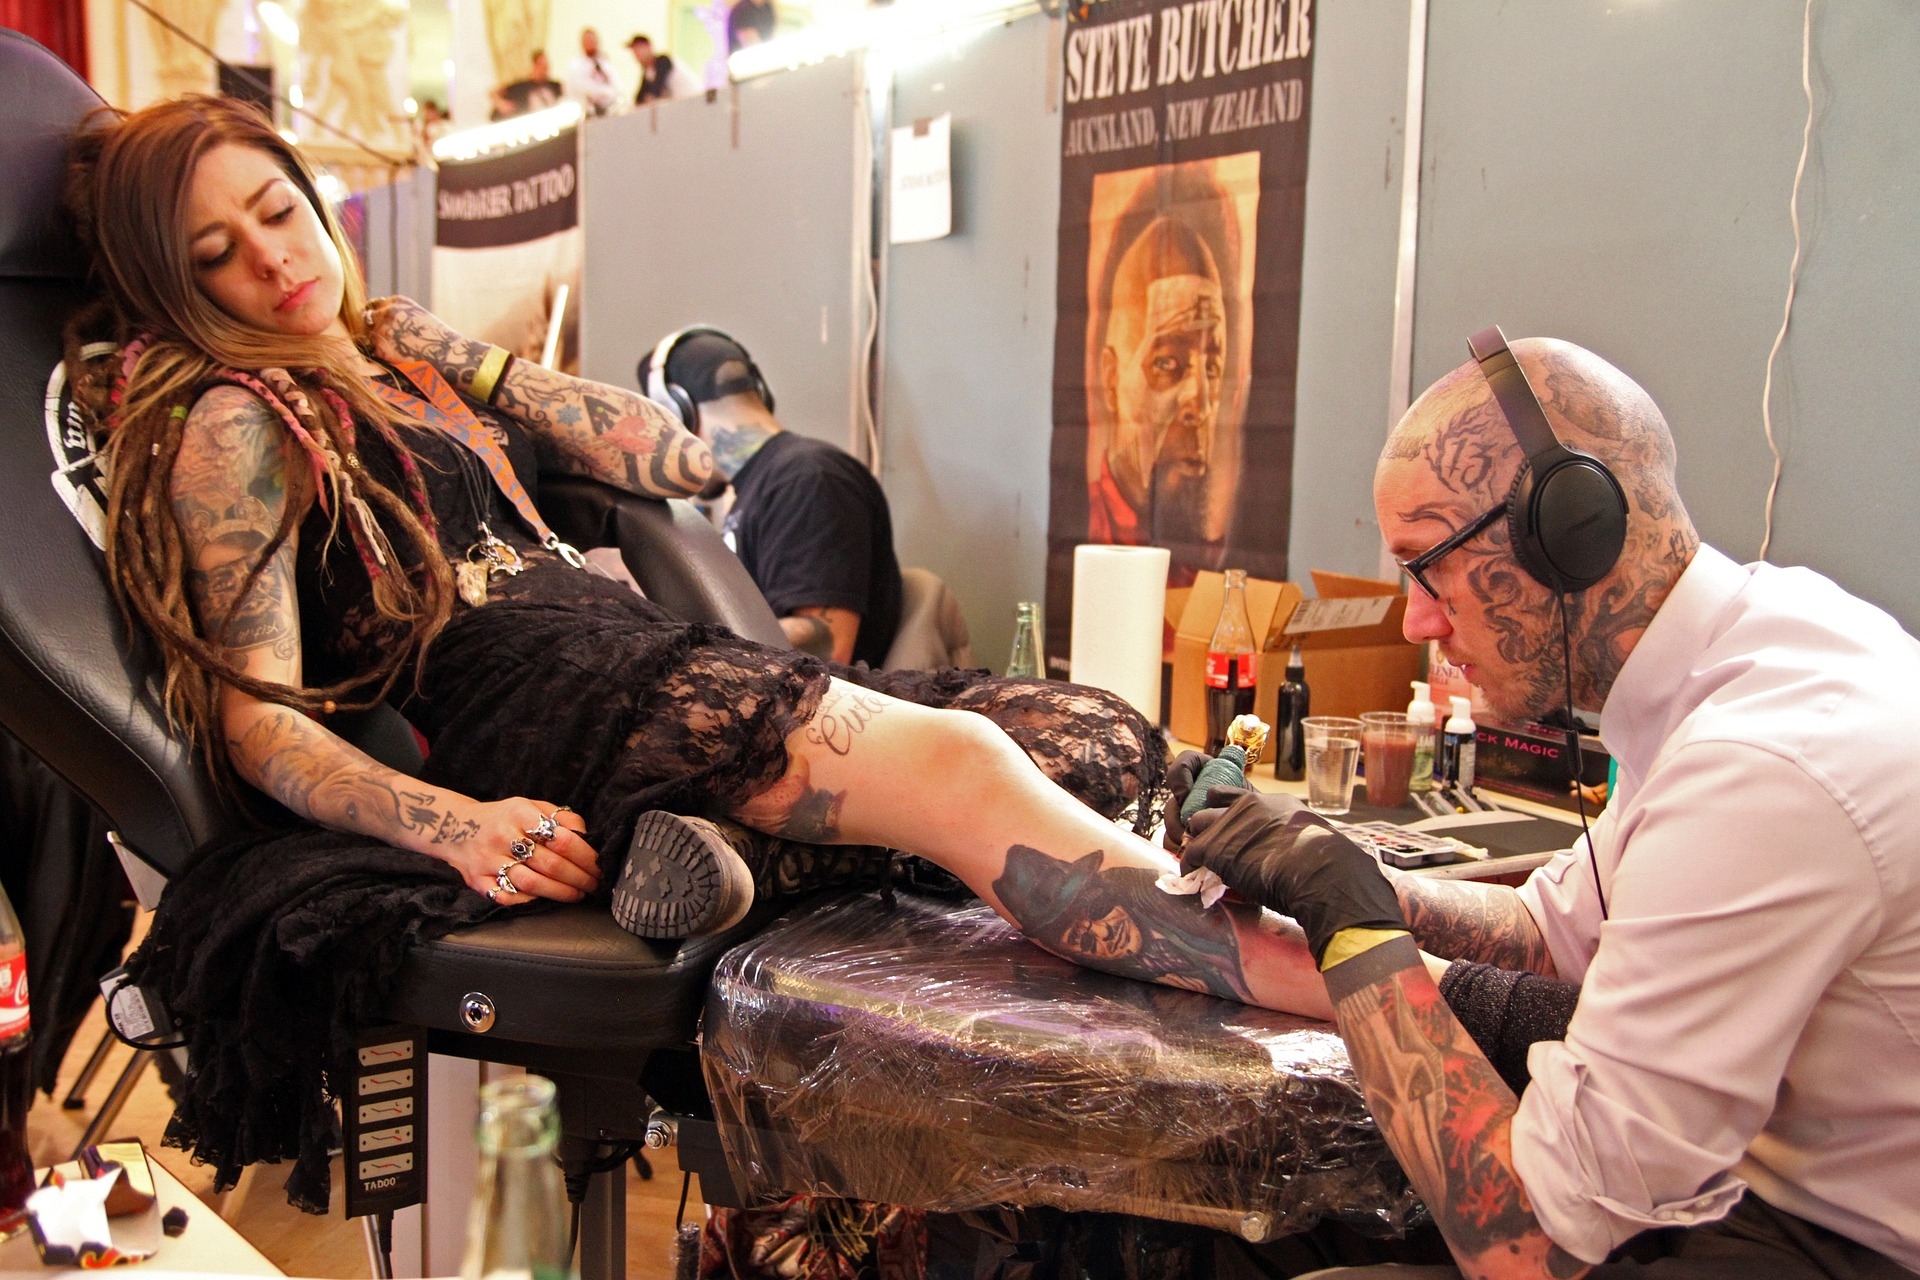 Mulher ruiva, com longos cabelos lisos e pele clara, usando roupa preta, com tatuagens nos braços e nas pernas, está deitada sobre a cadeira de um tatuador em um estúdio, enquanto o tatuador faz uma nova tatuagem em sua perna. O tatuador tem a pele clara e a cabeça raspada, com tatuagens no braço e na cabeça. Imagem: Licel, Pixabay.com.  